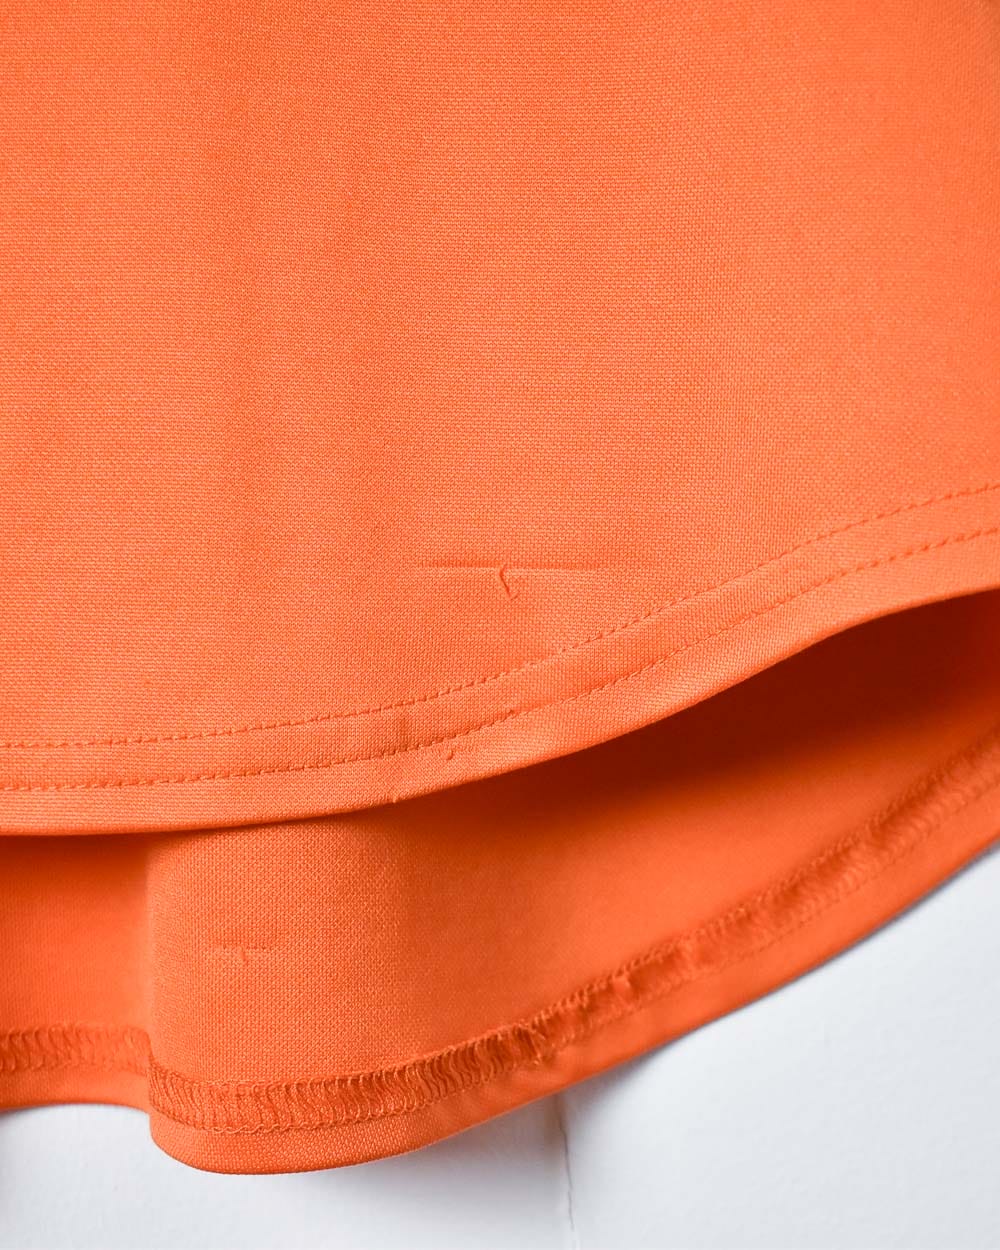 Orange Nike Team T-Shirt - Medium